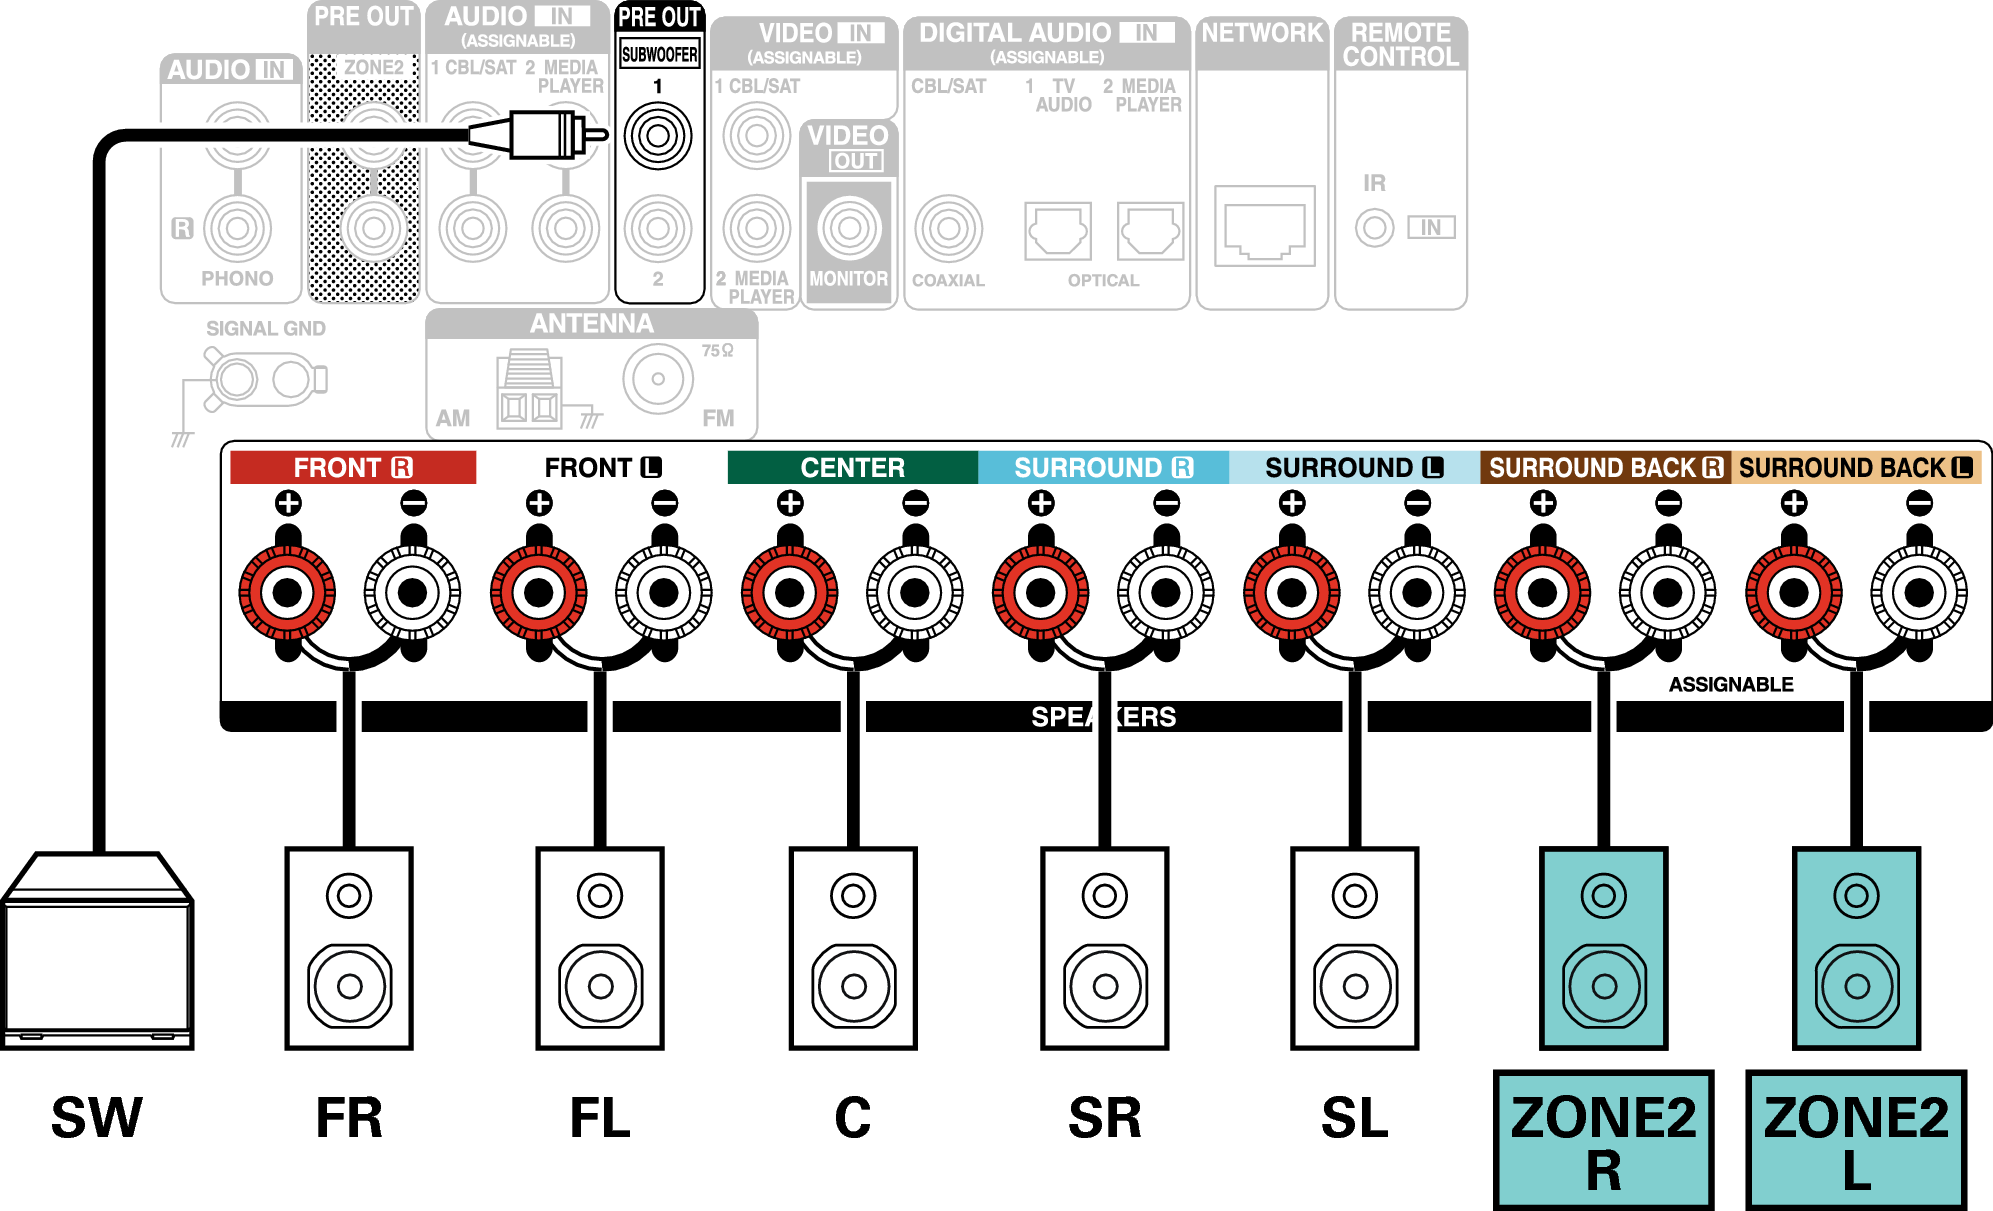 Conne SP 5.1 ZONE2 X16E3